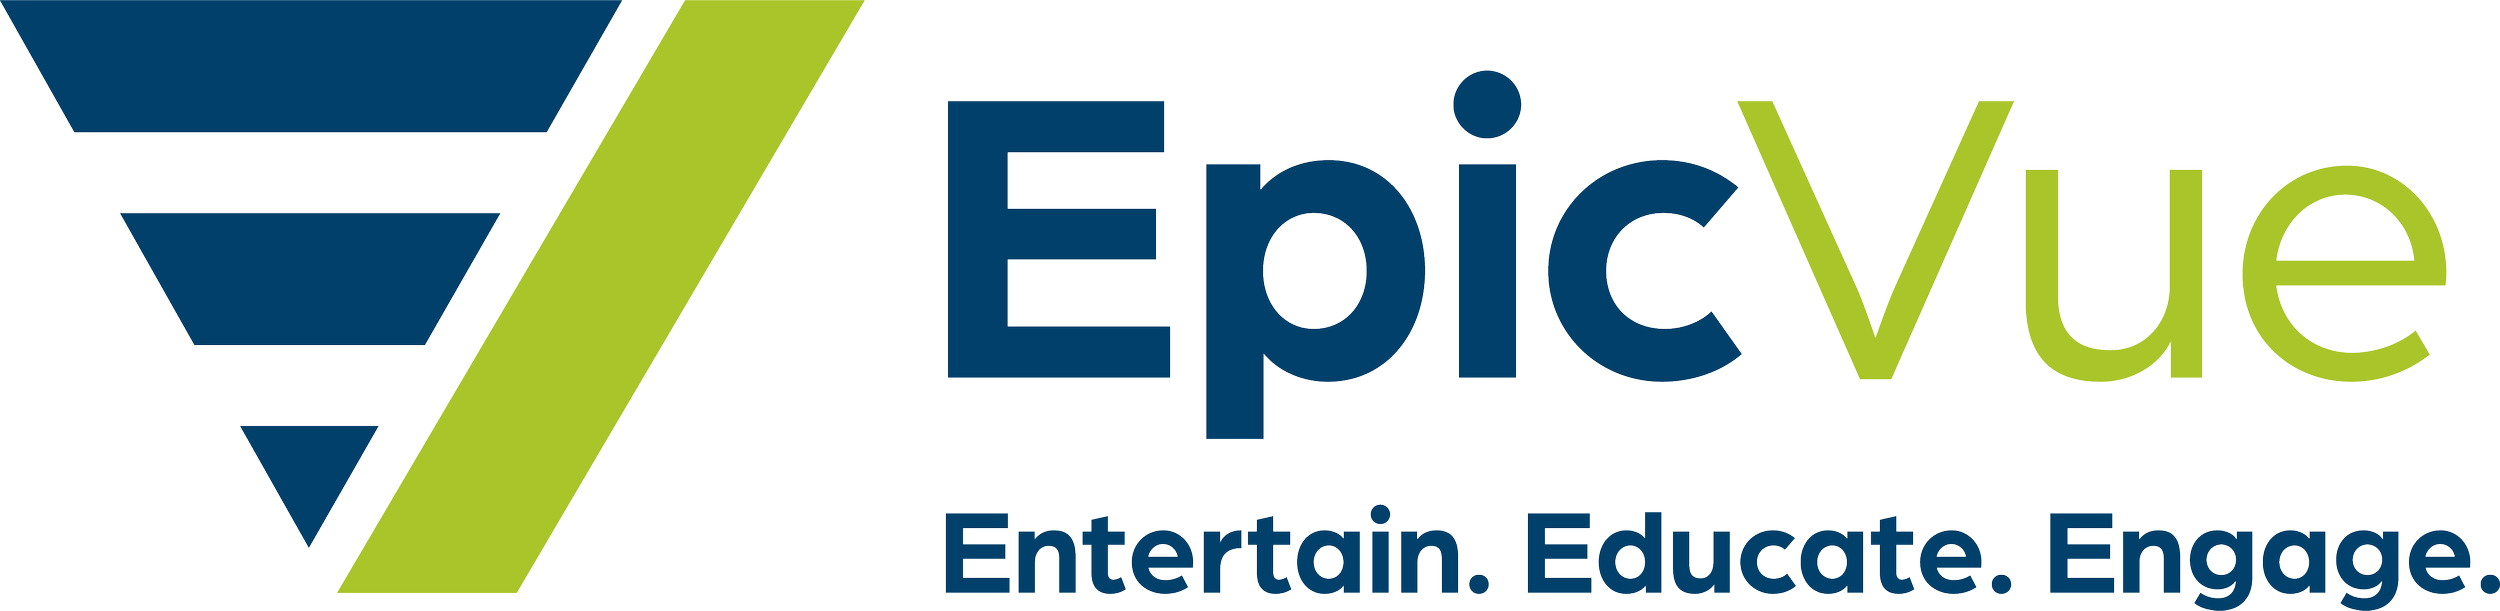 EpicVue_Logo_Tagline_Full_v2.png